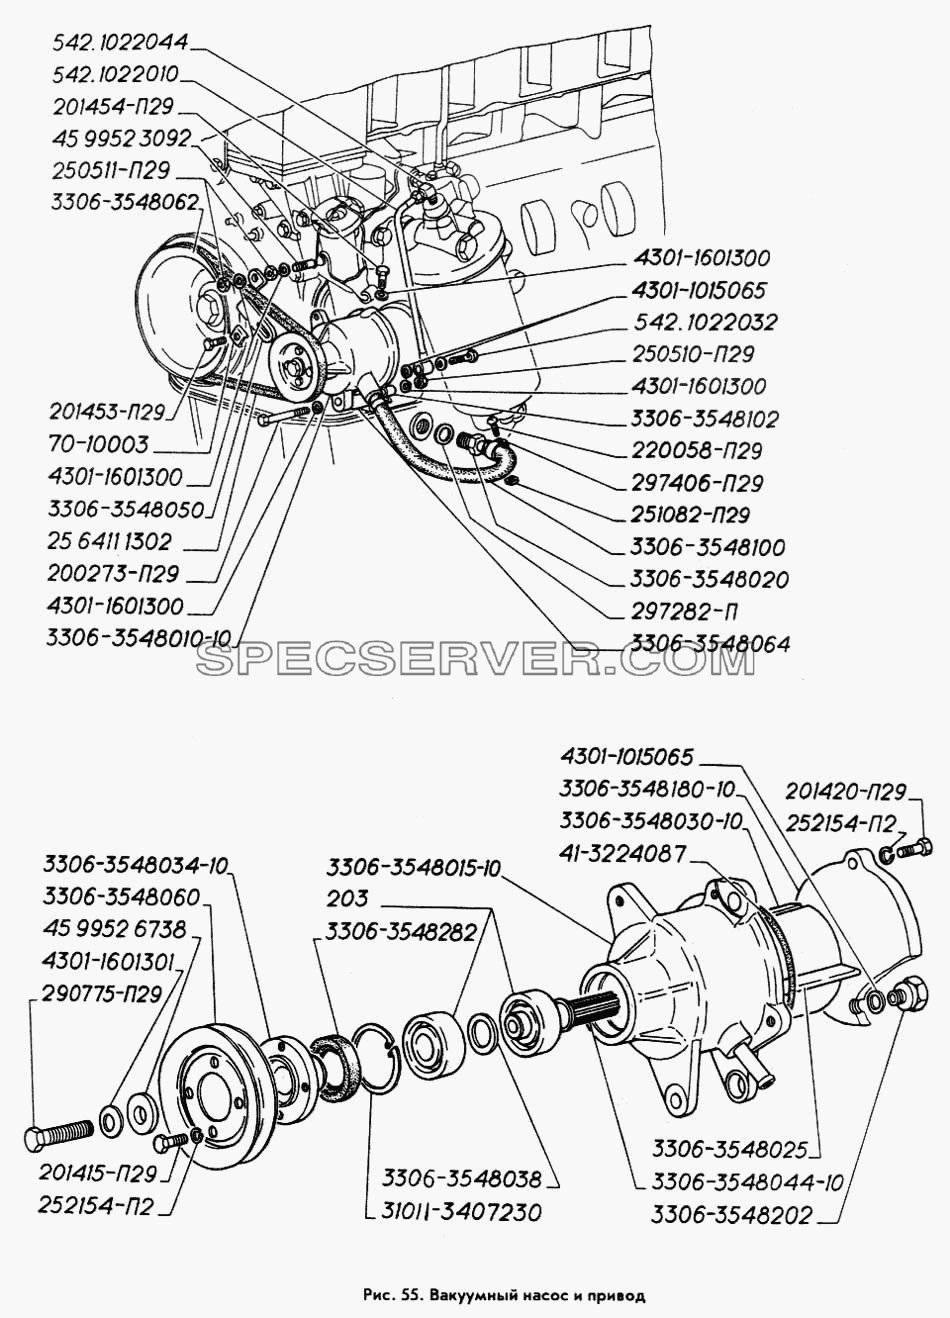 Вакуумный насос и привод для ГАЗ-3309 (список запасных частей)